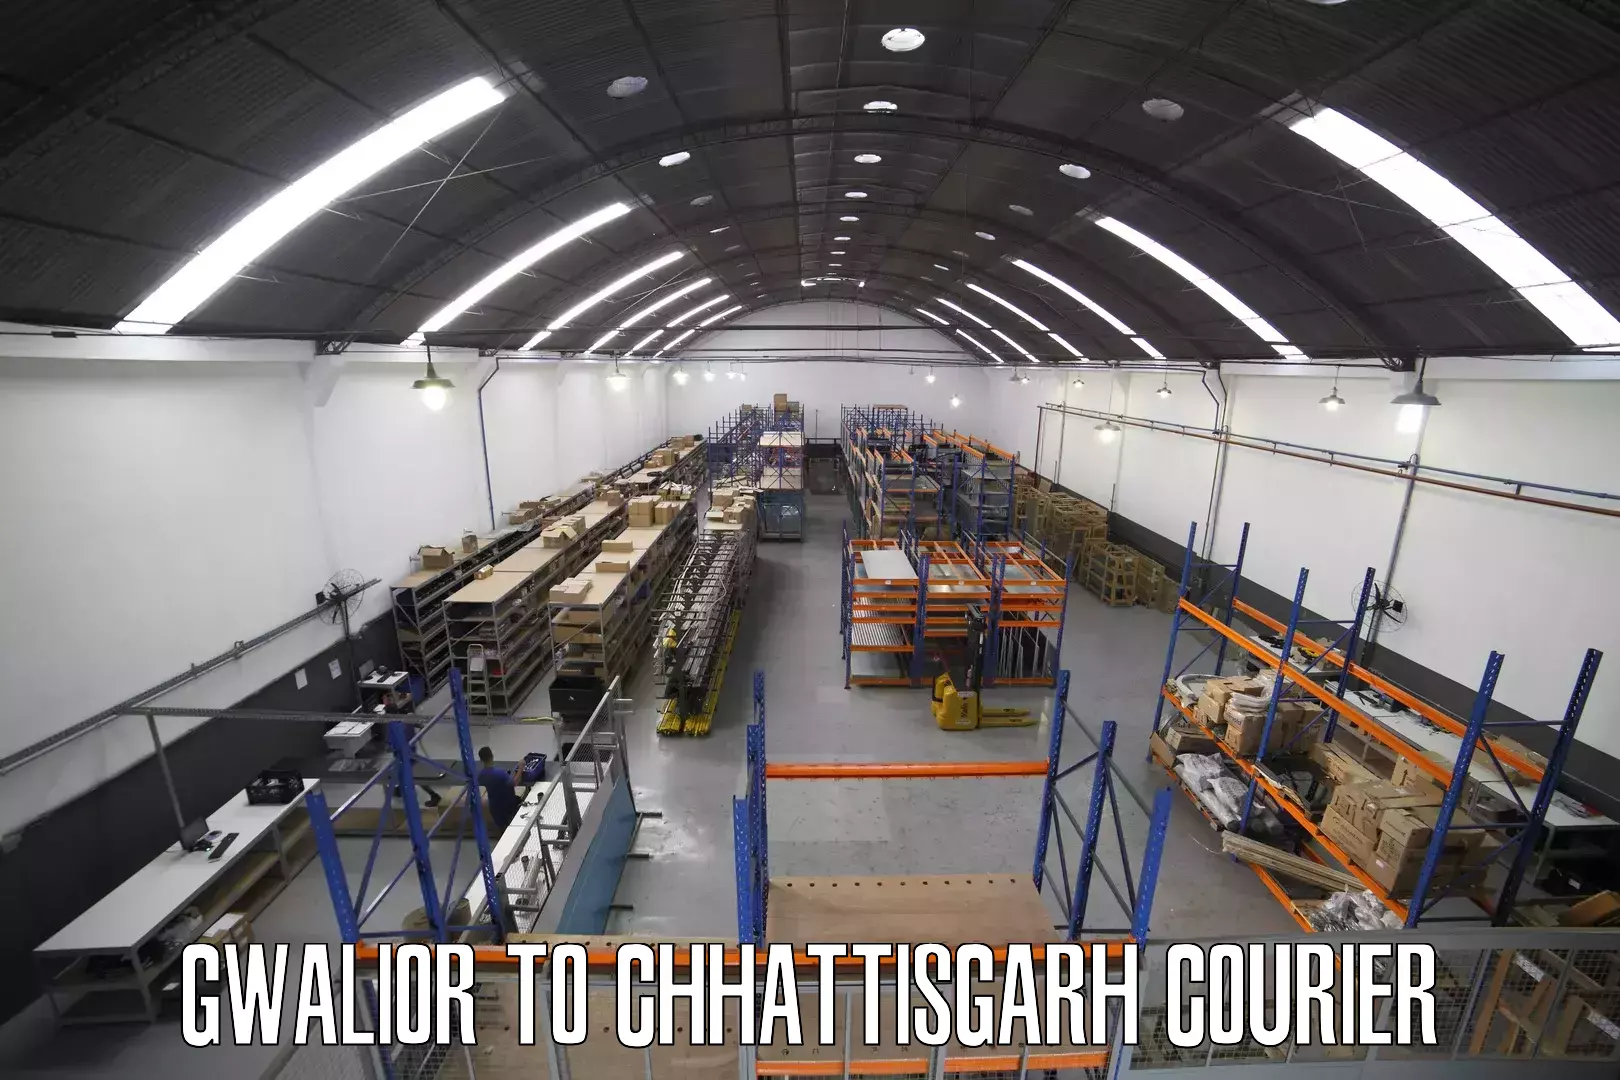 Logistics service provider Gwalior to Chhattisgarh